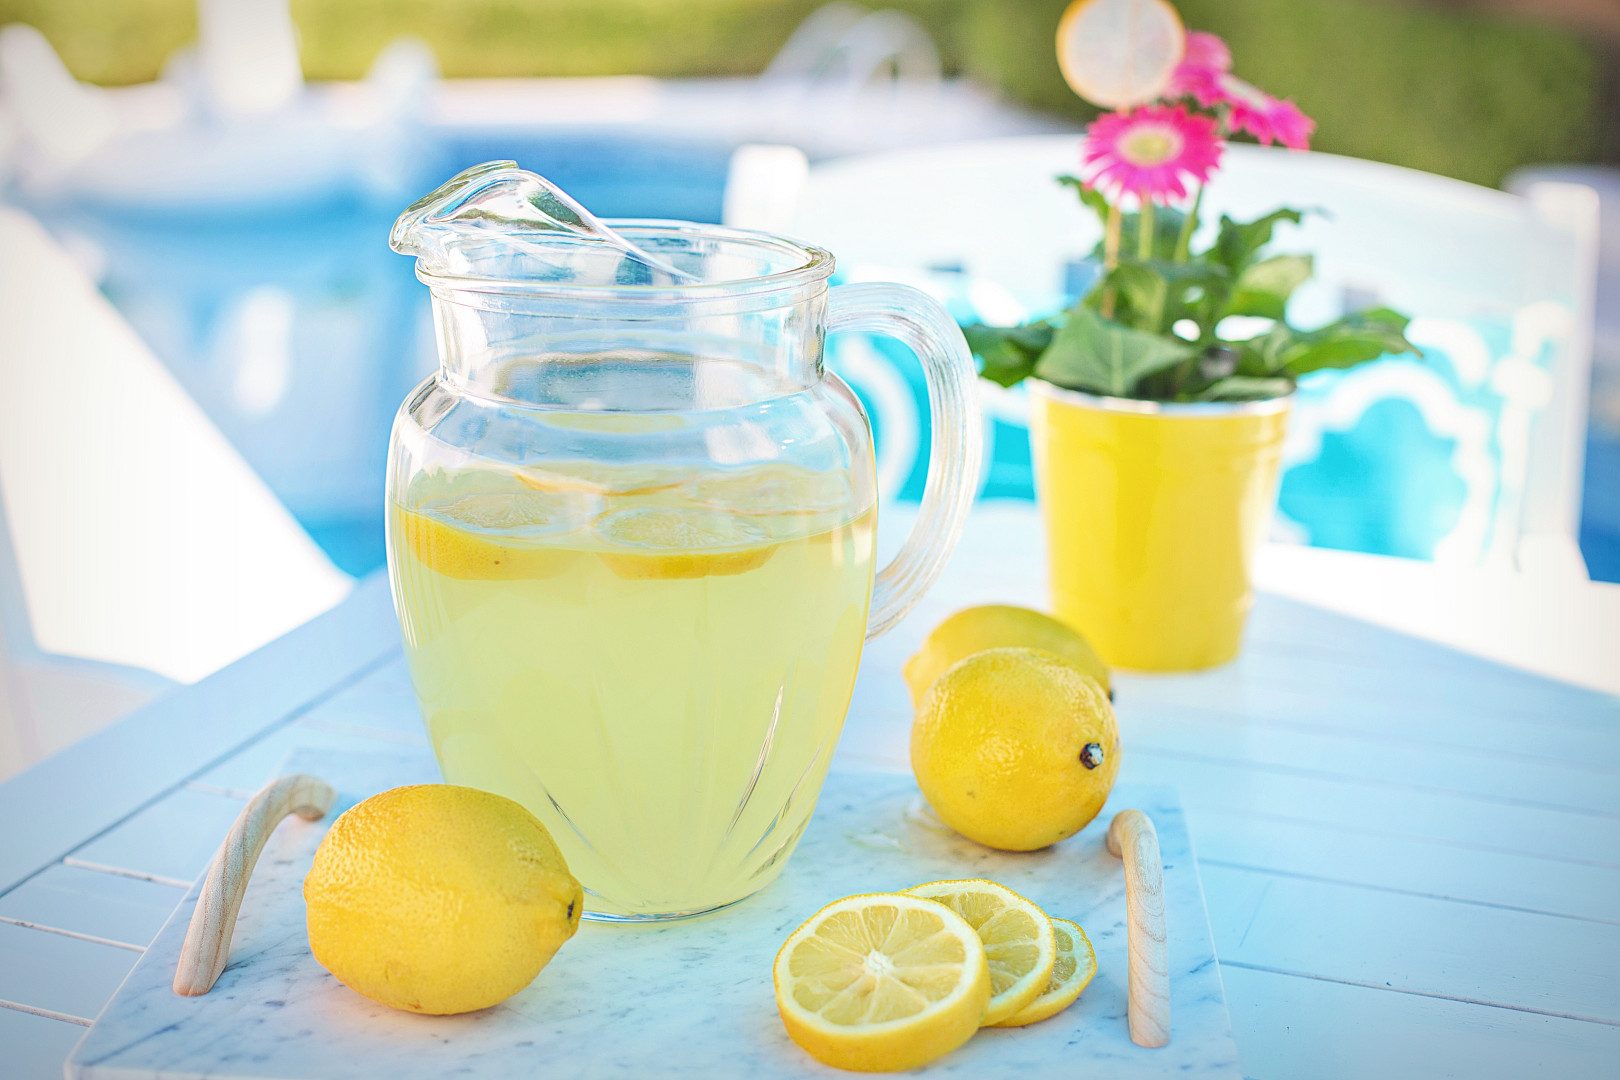 slavná americká pink lemonade se připravuje z citronů, skvěle osvěží a typicky růžovou barvu jí dodá netradiční surovina